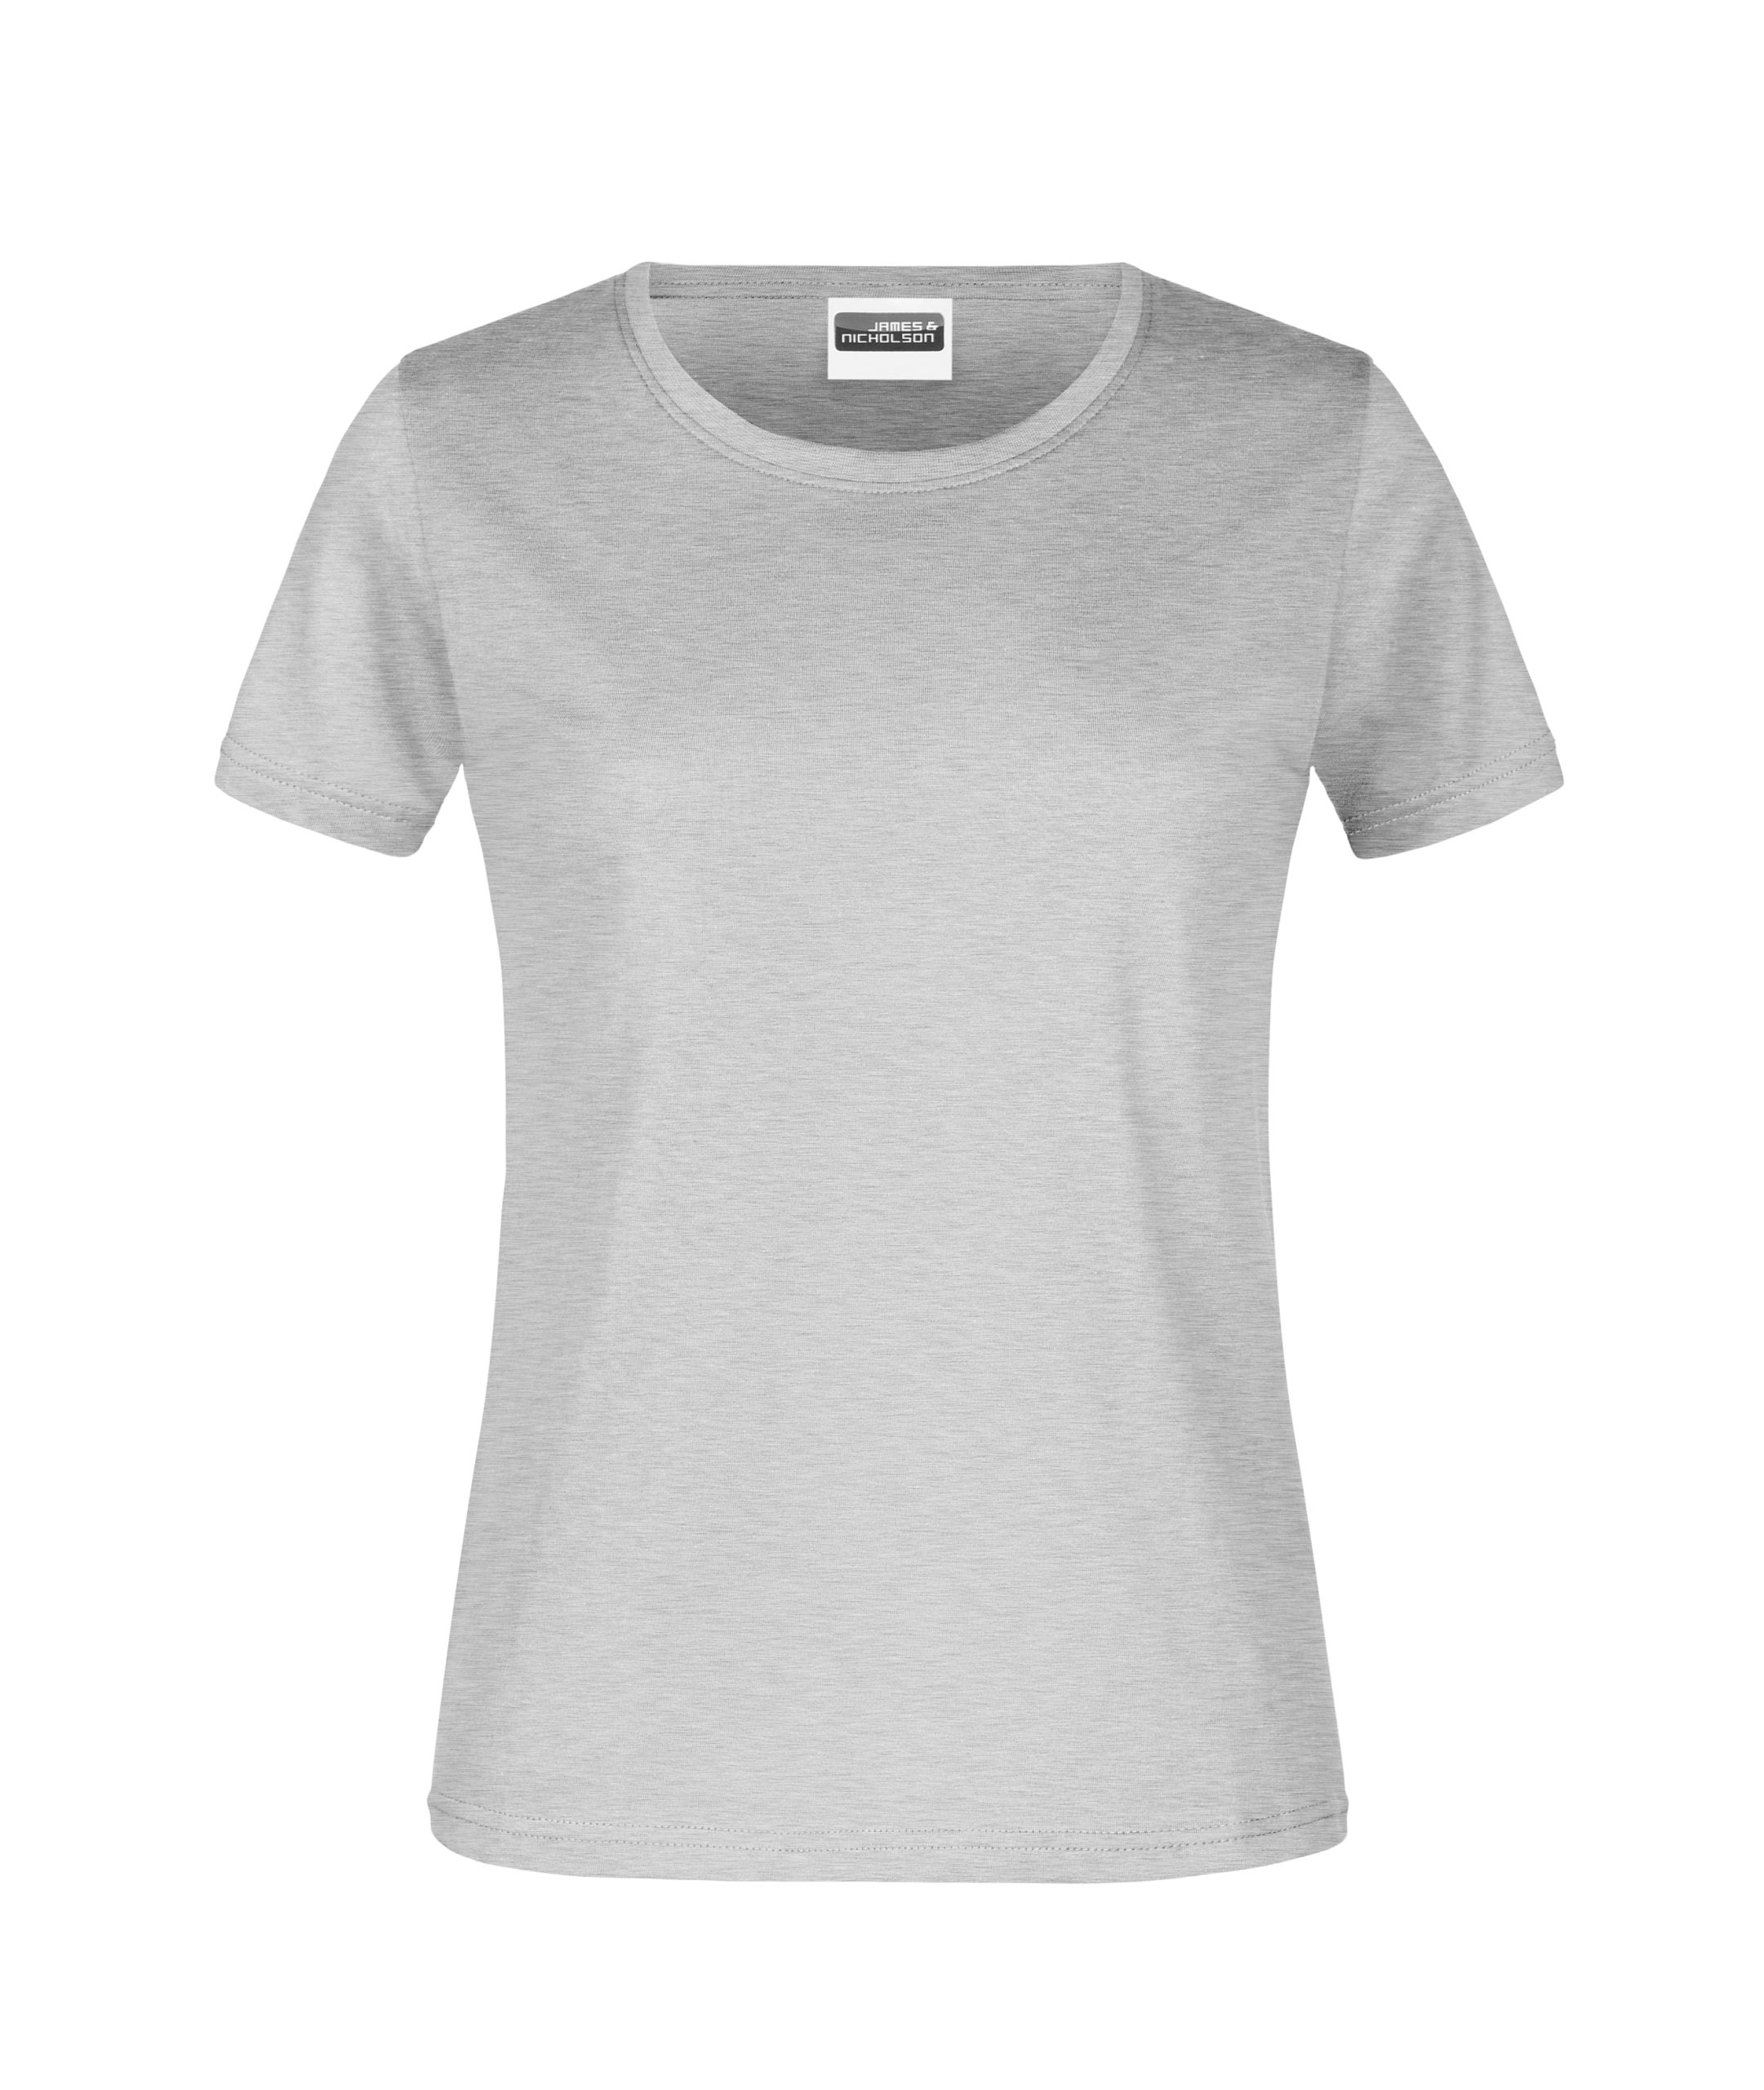 T-Shirt Lady heather grey Bestens Beworben - gr 180